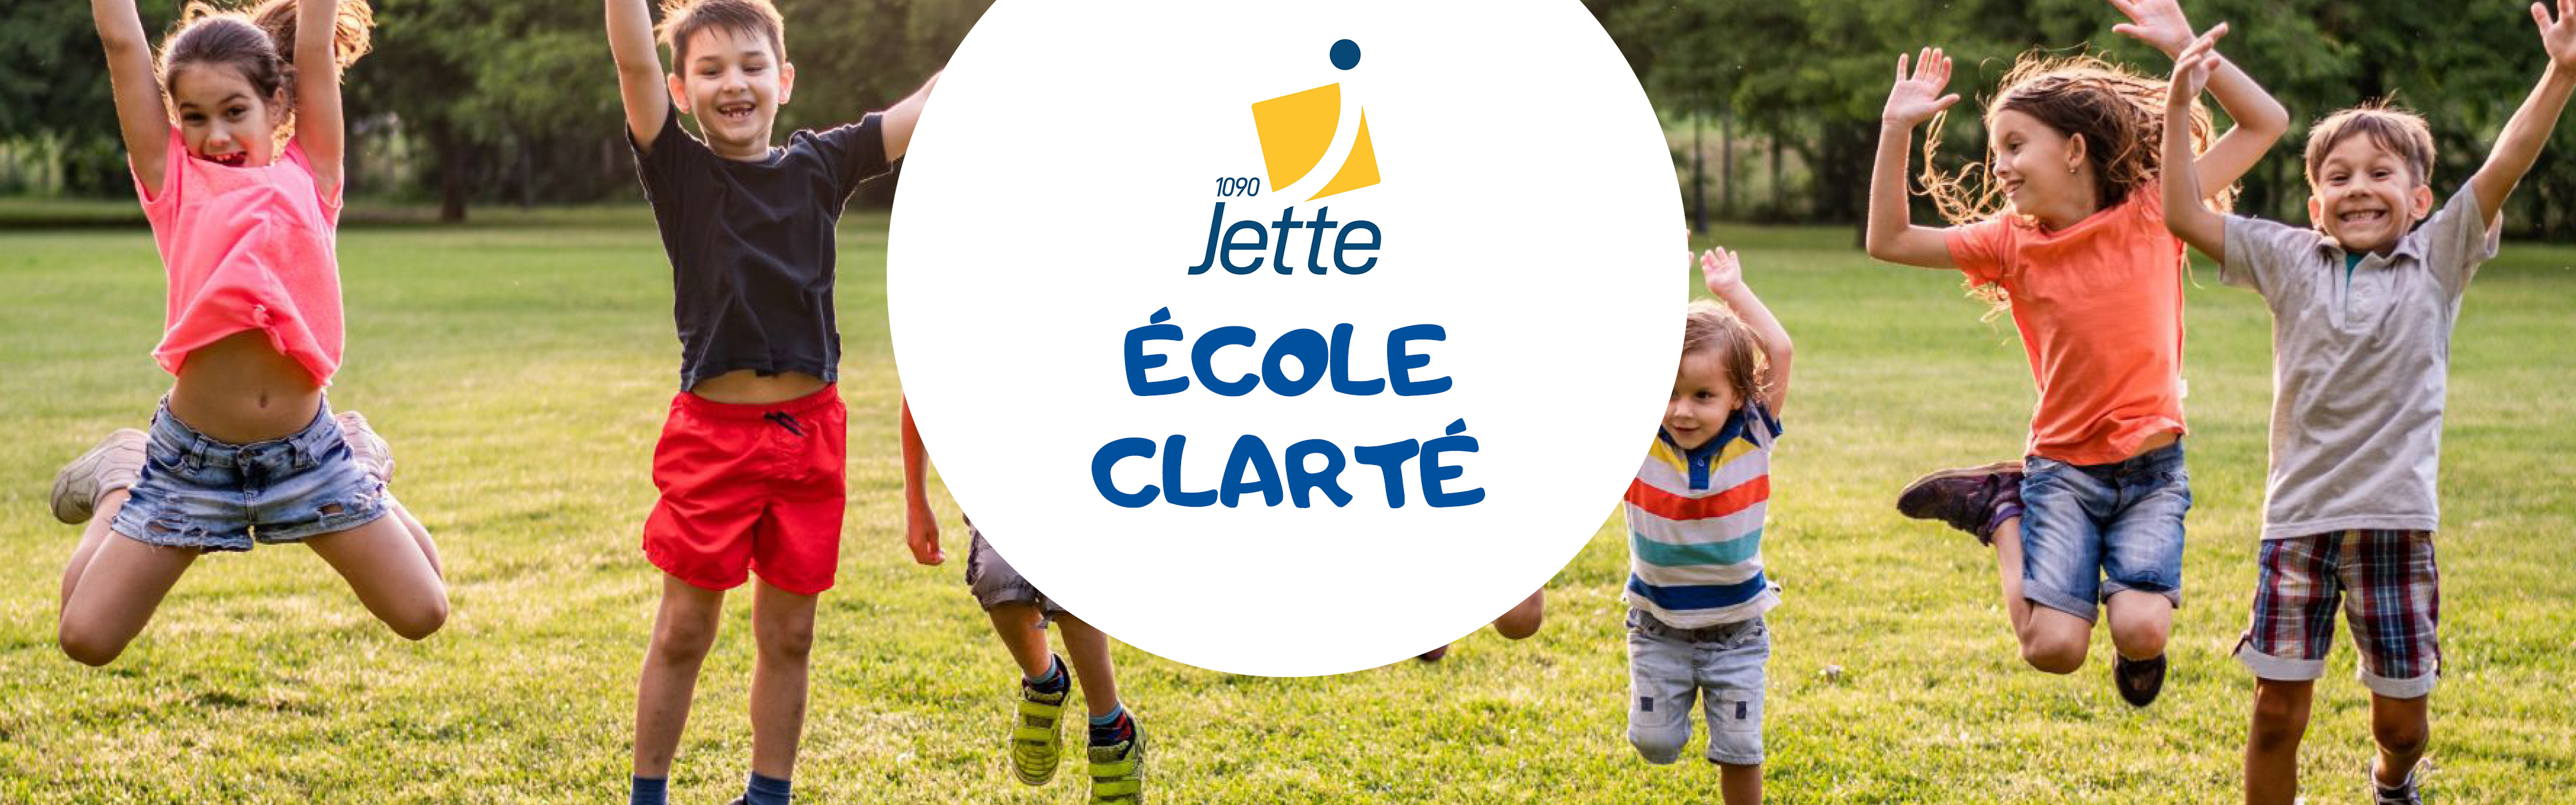 Jette - Ecole Clarté